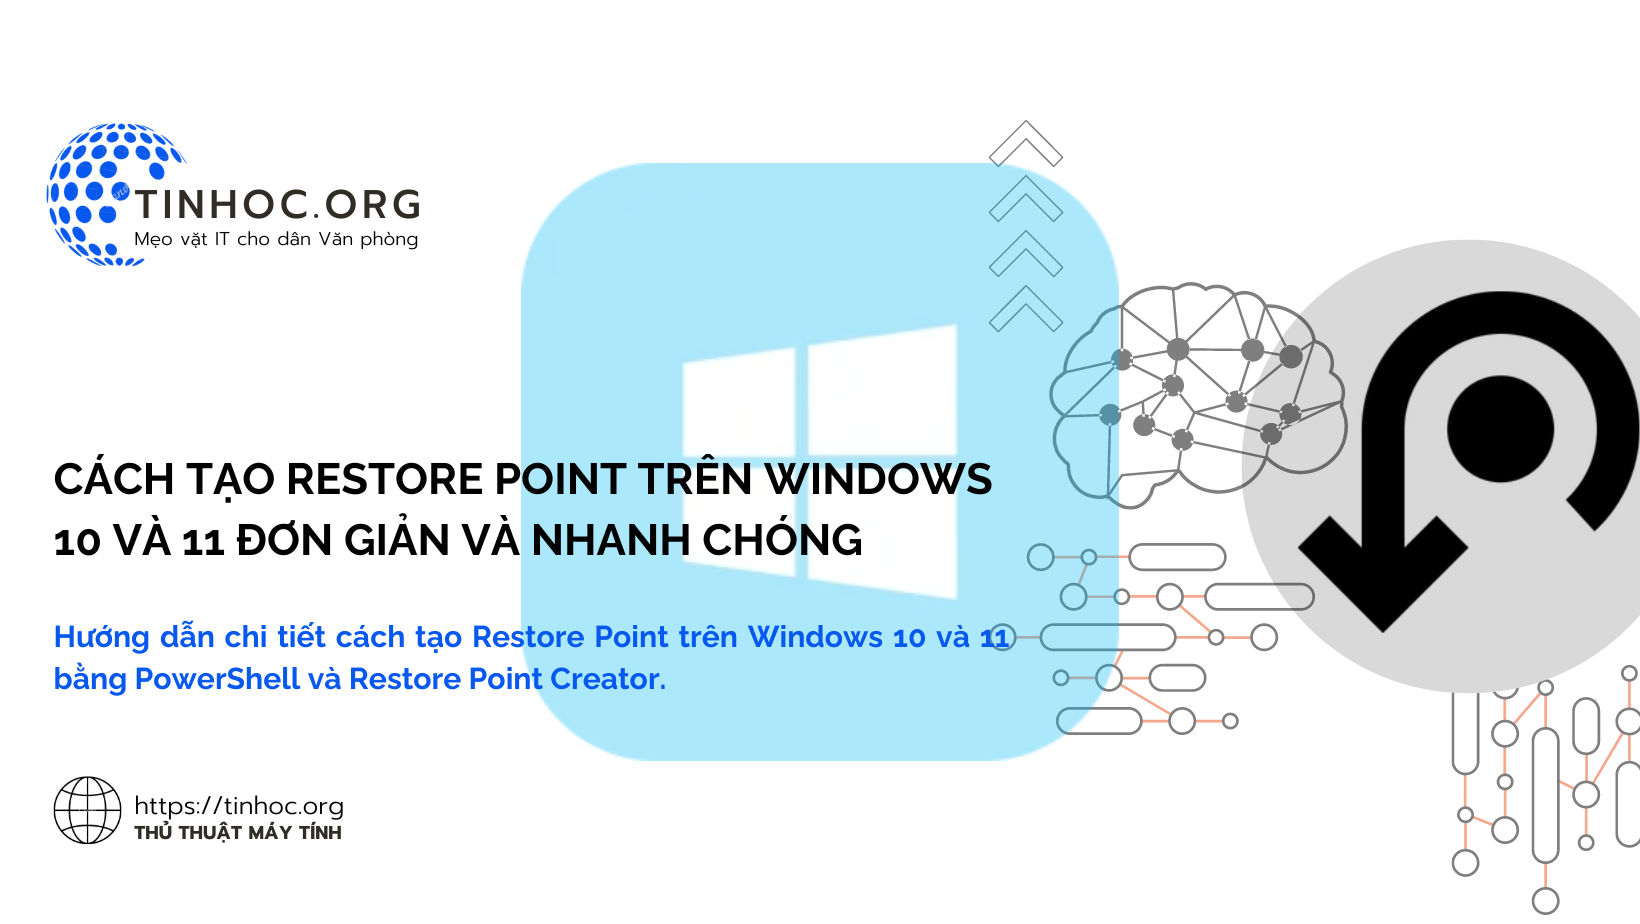 Hướng dẫn chi tiết cách tạo Restore Point trên Windows 10 và 11 bằng PowerShell và Restore Point Creator.